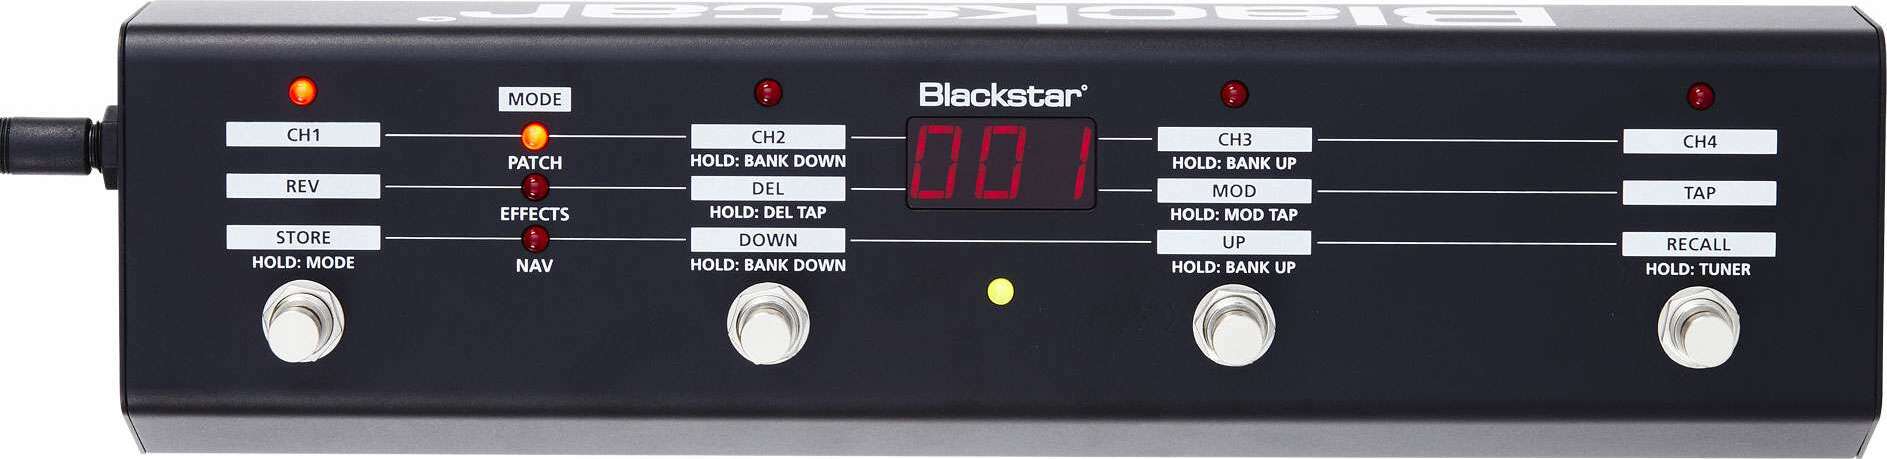 Blackstar Fs10 - Fußschalter für Verstärker - Main picture